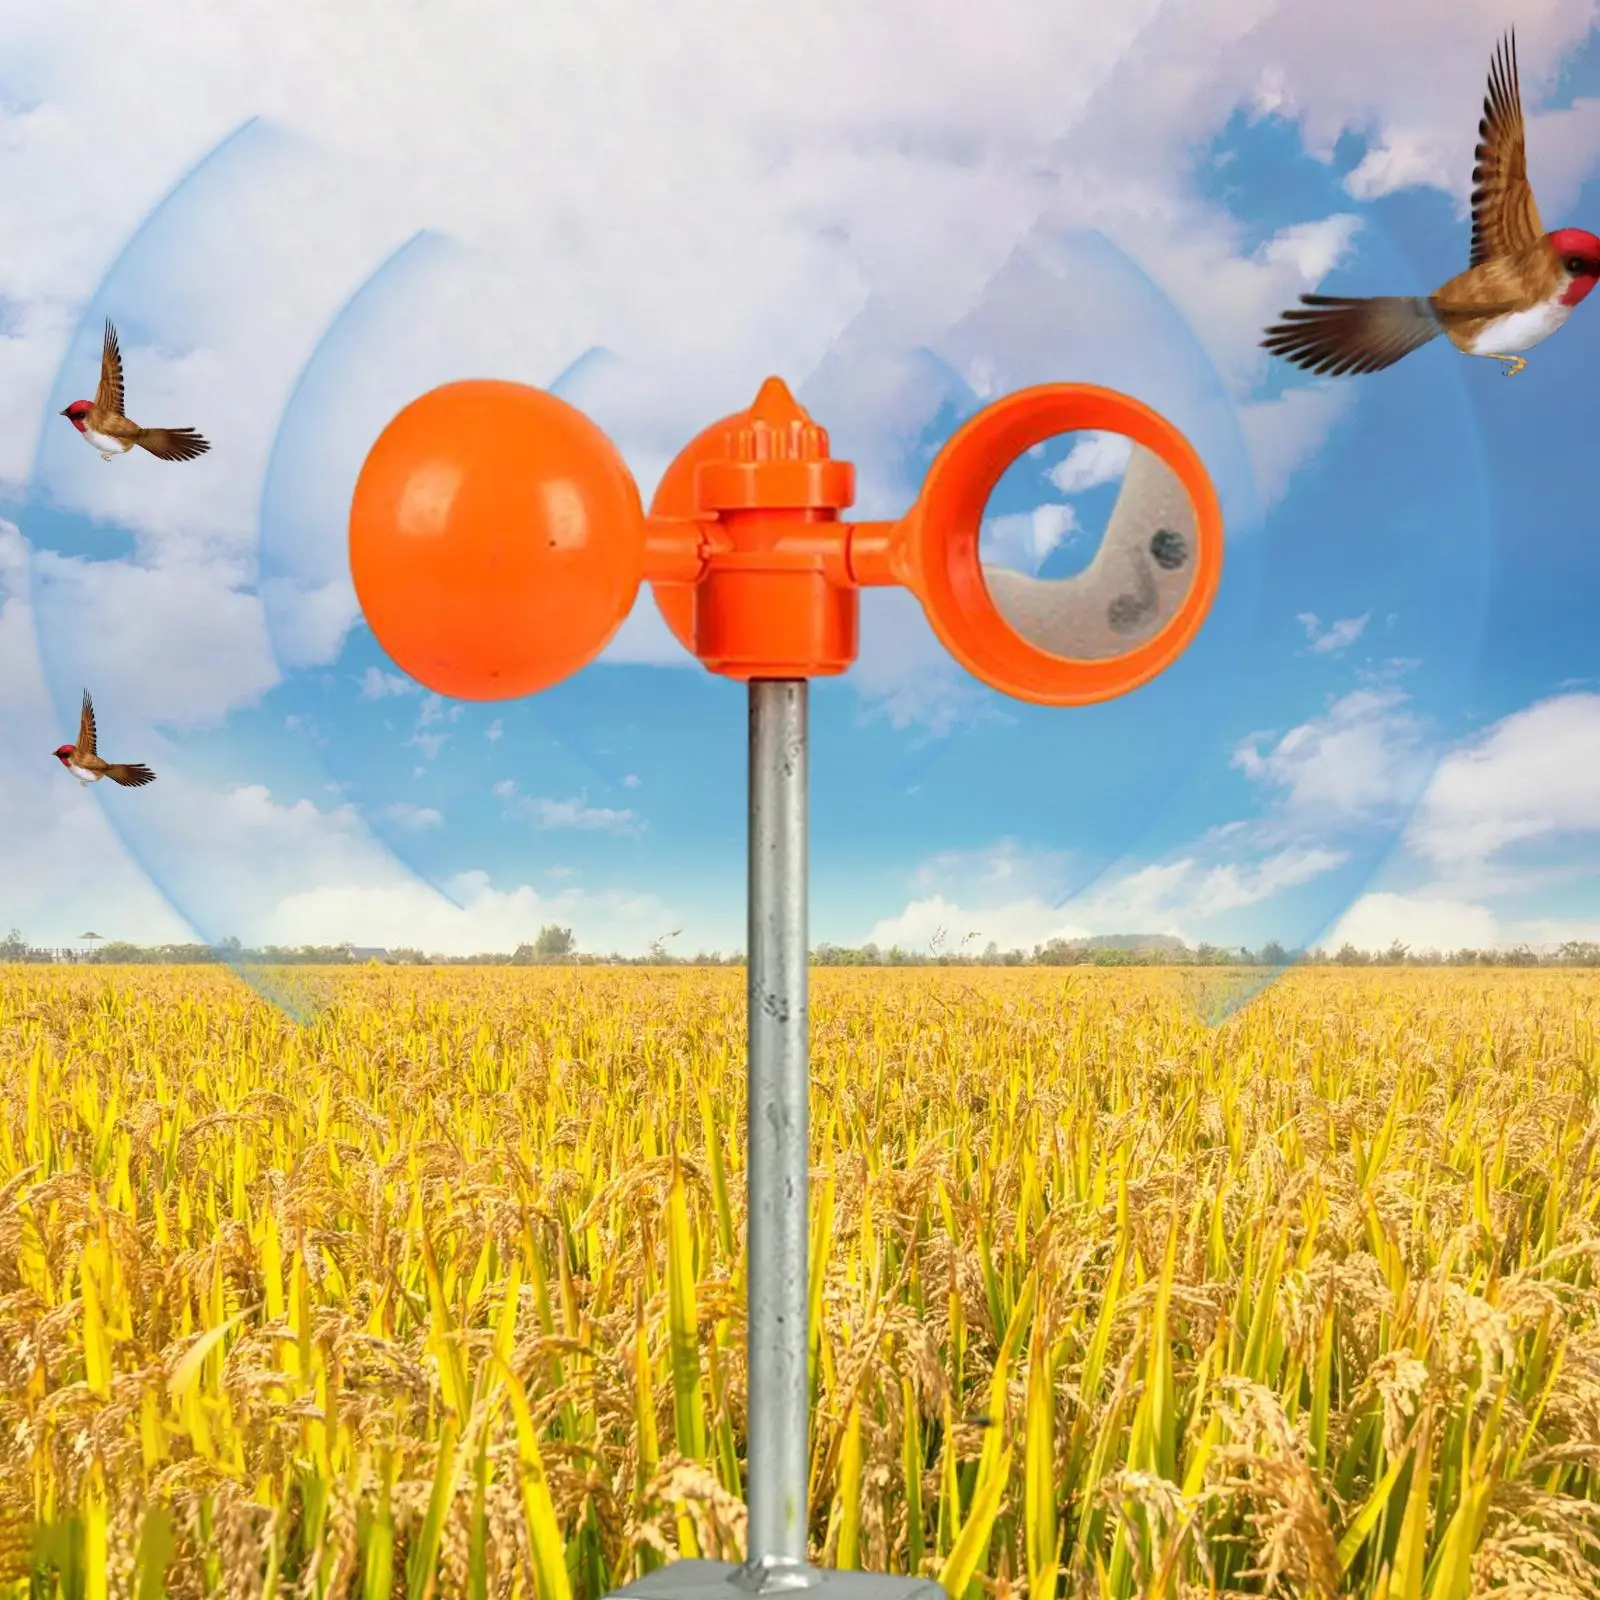 

Отпугиватель птиц, вращающийся на 360 градусов, отражающее приспособление для отпугивания птиц, устройство для борьбы с вредителями для сада